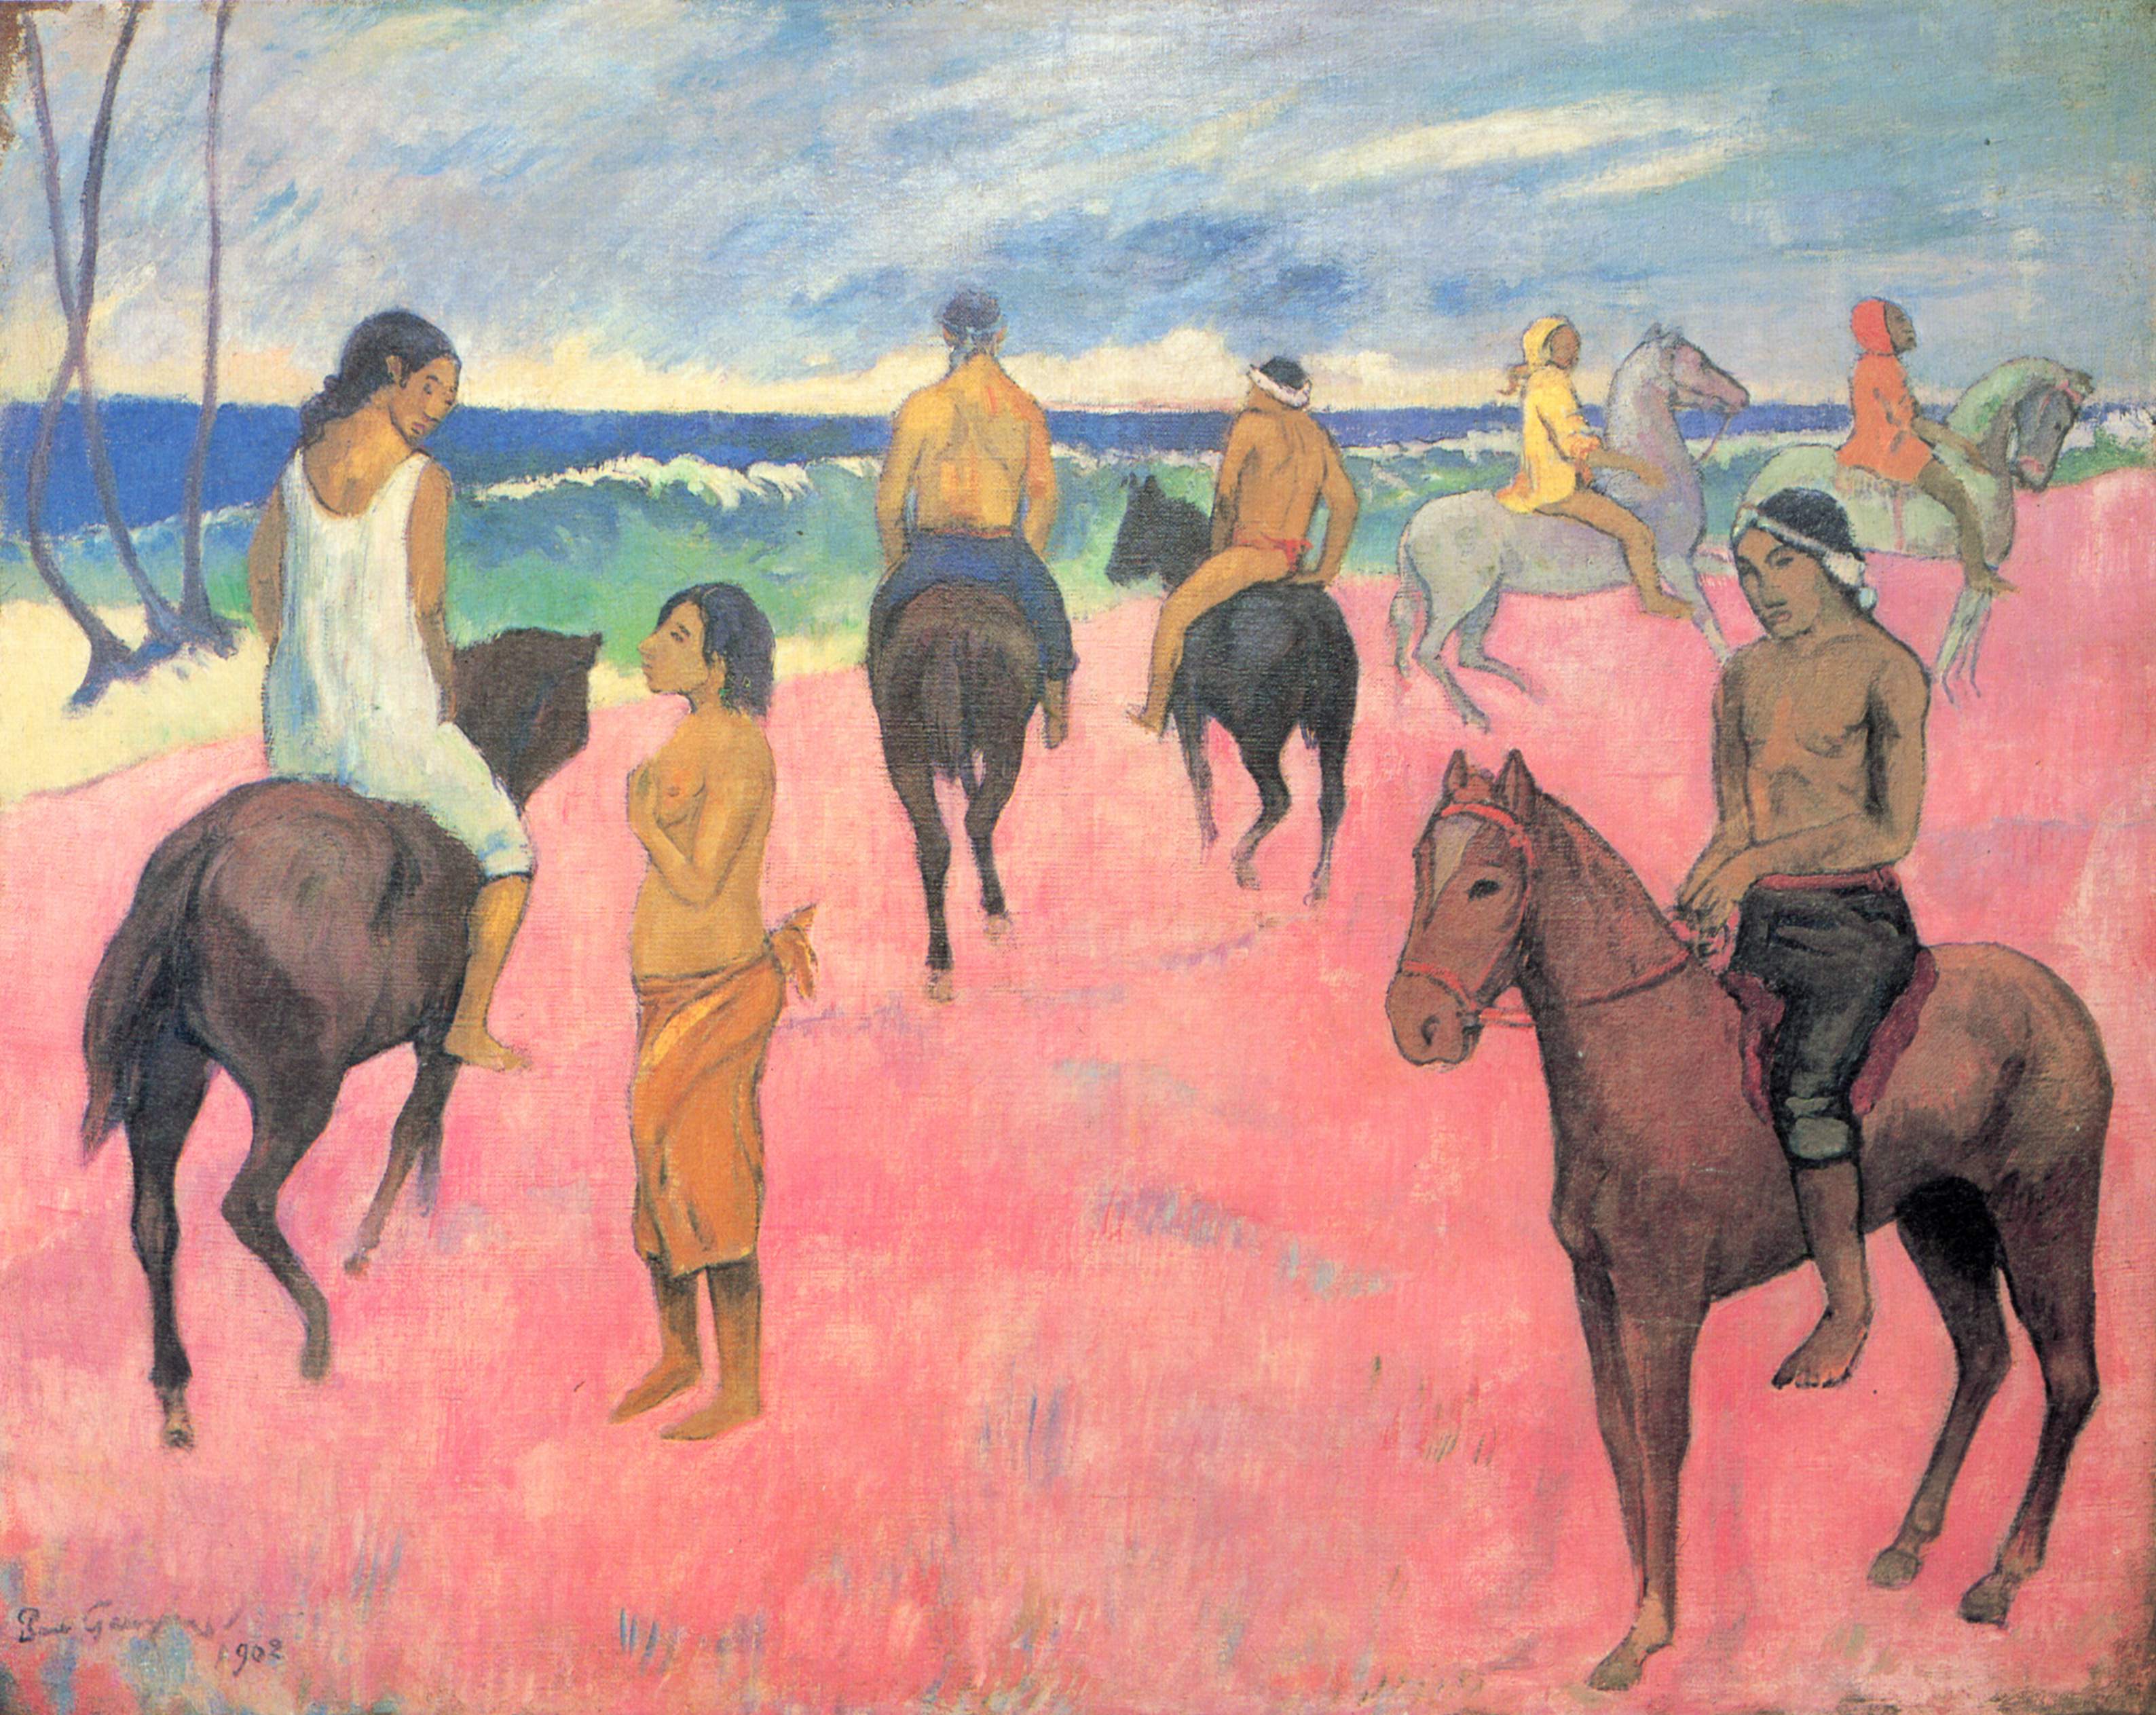 Cavaliers à la Plage by Paul Gauguin - 1902 - 73 × 92 cm collection privée